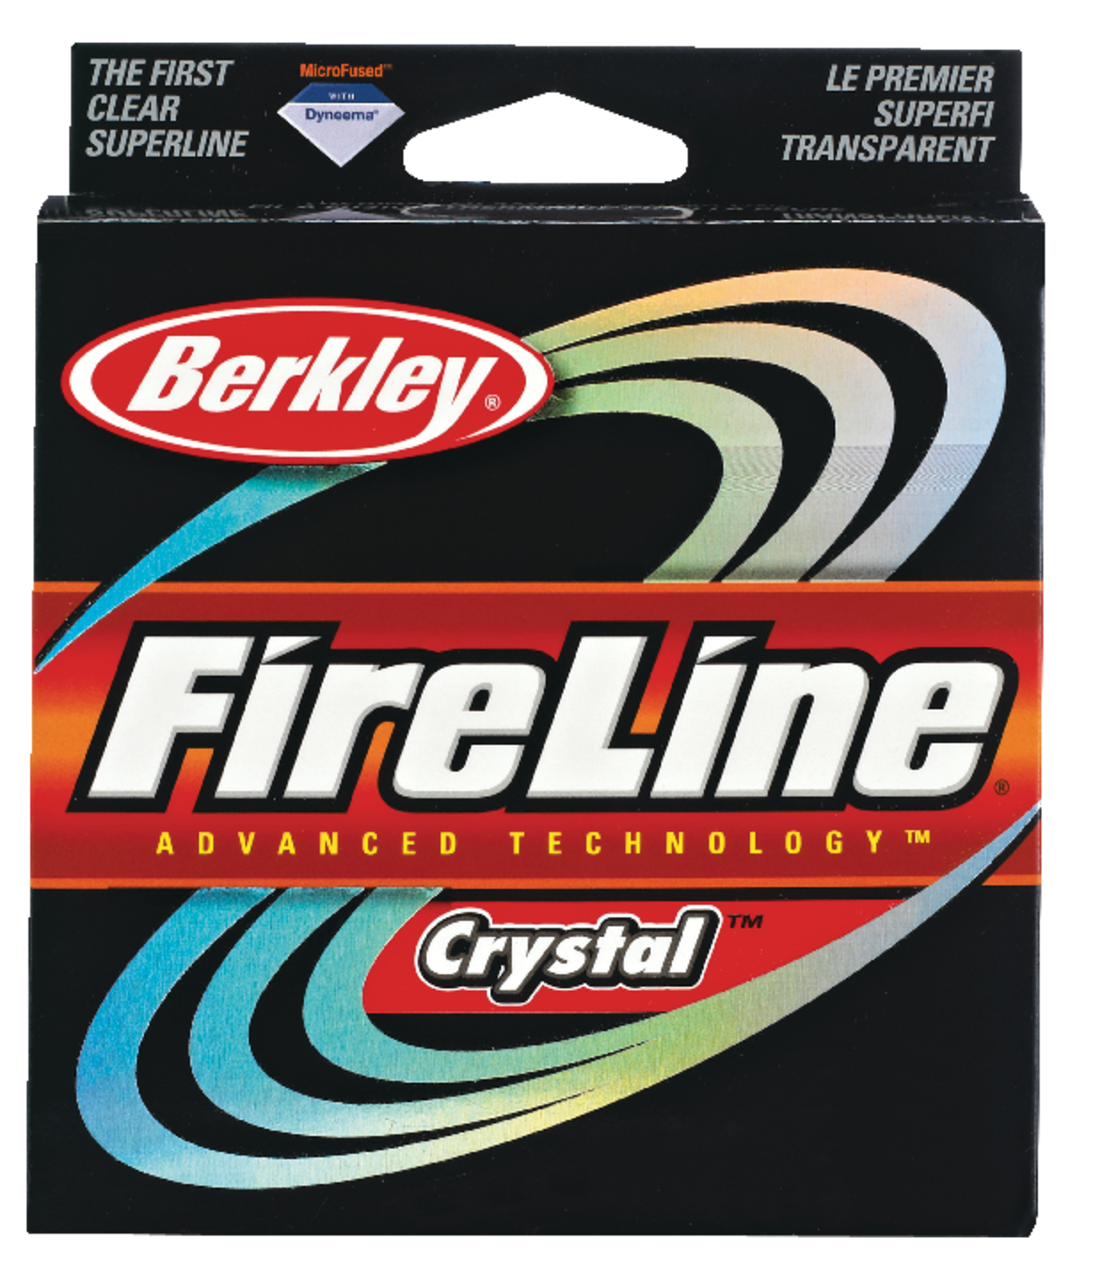  Berkley x5 Braid Superline, Crystal, 15-Pound Break